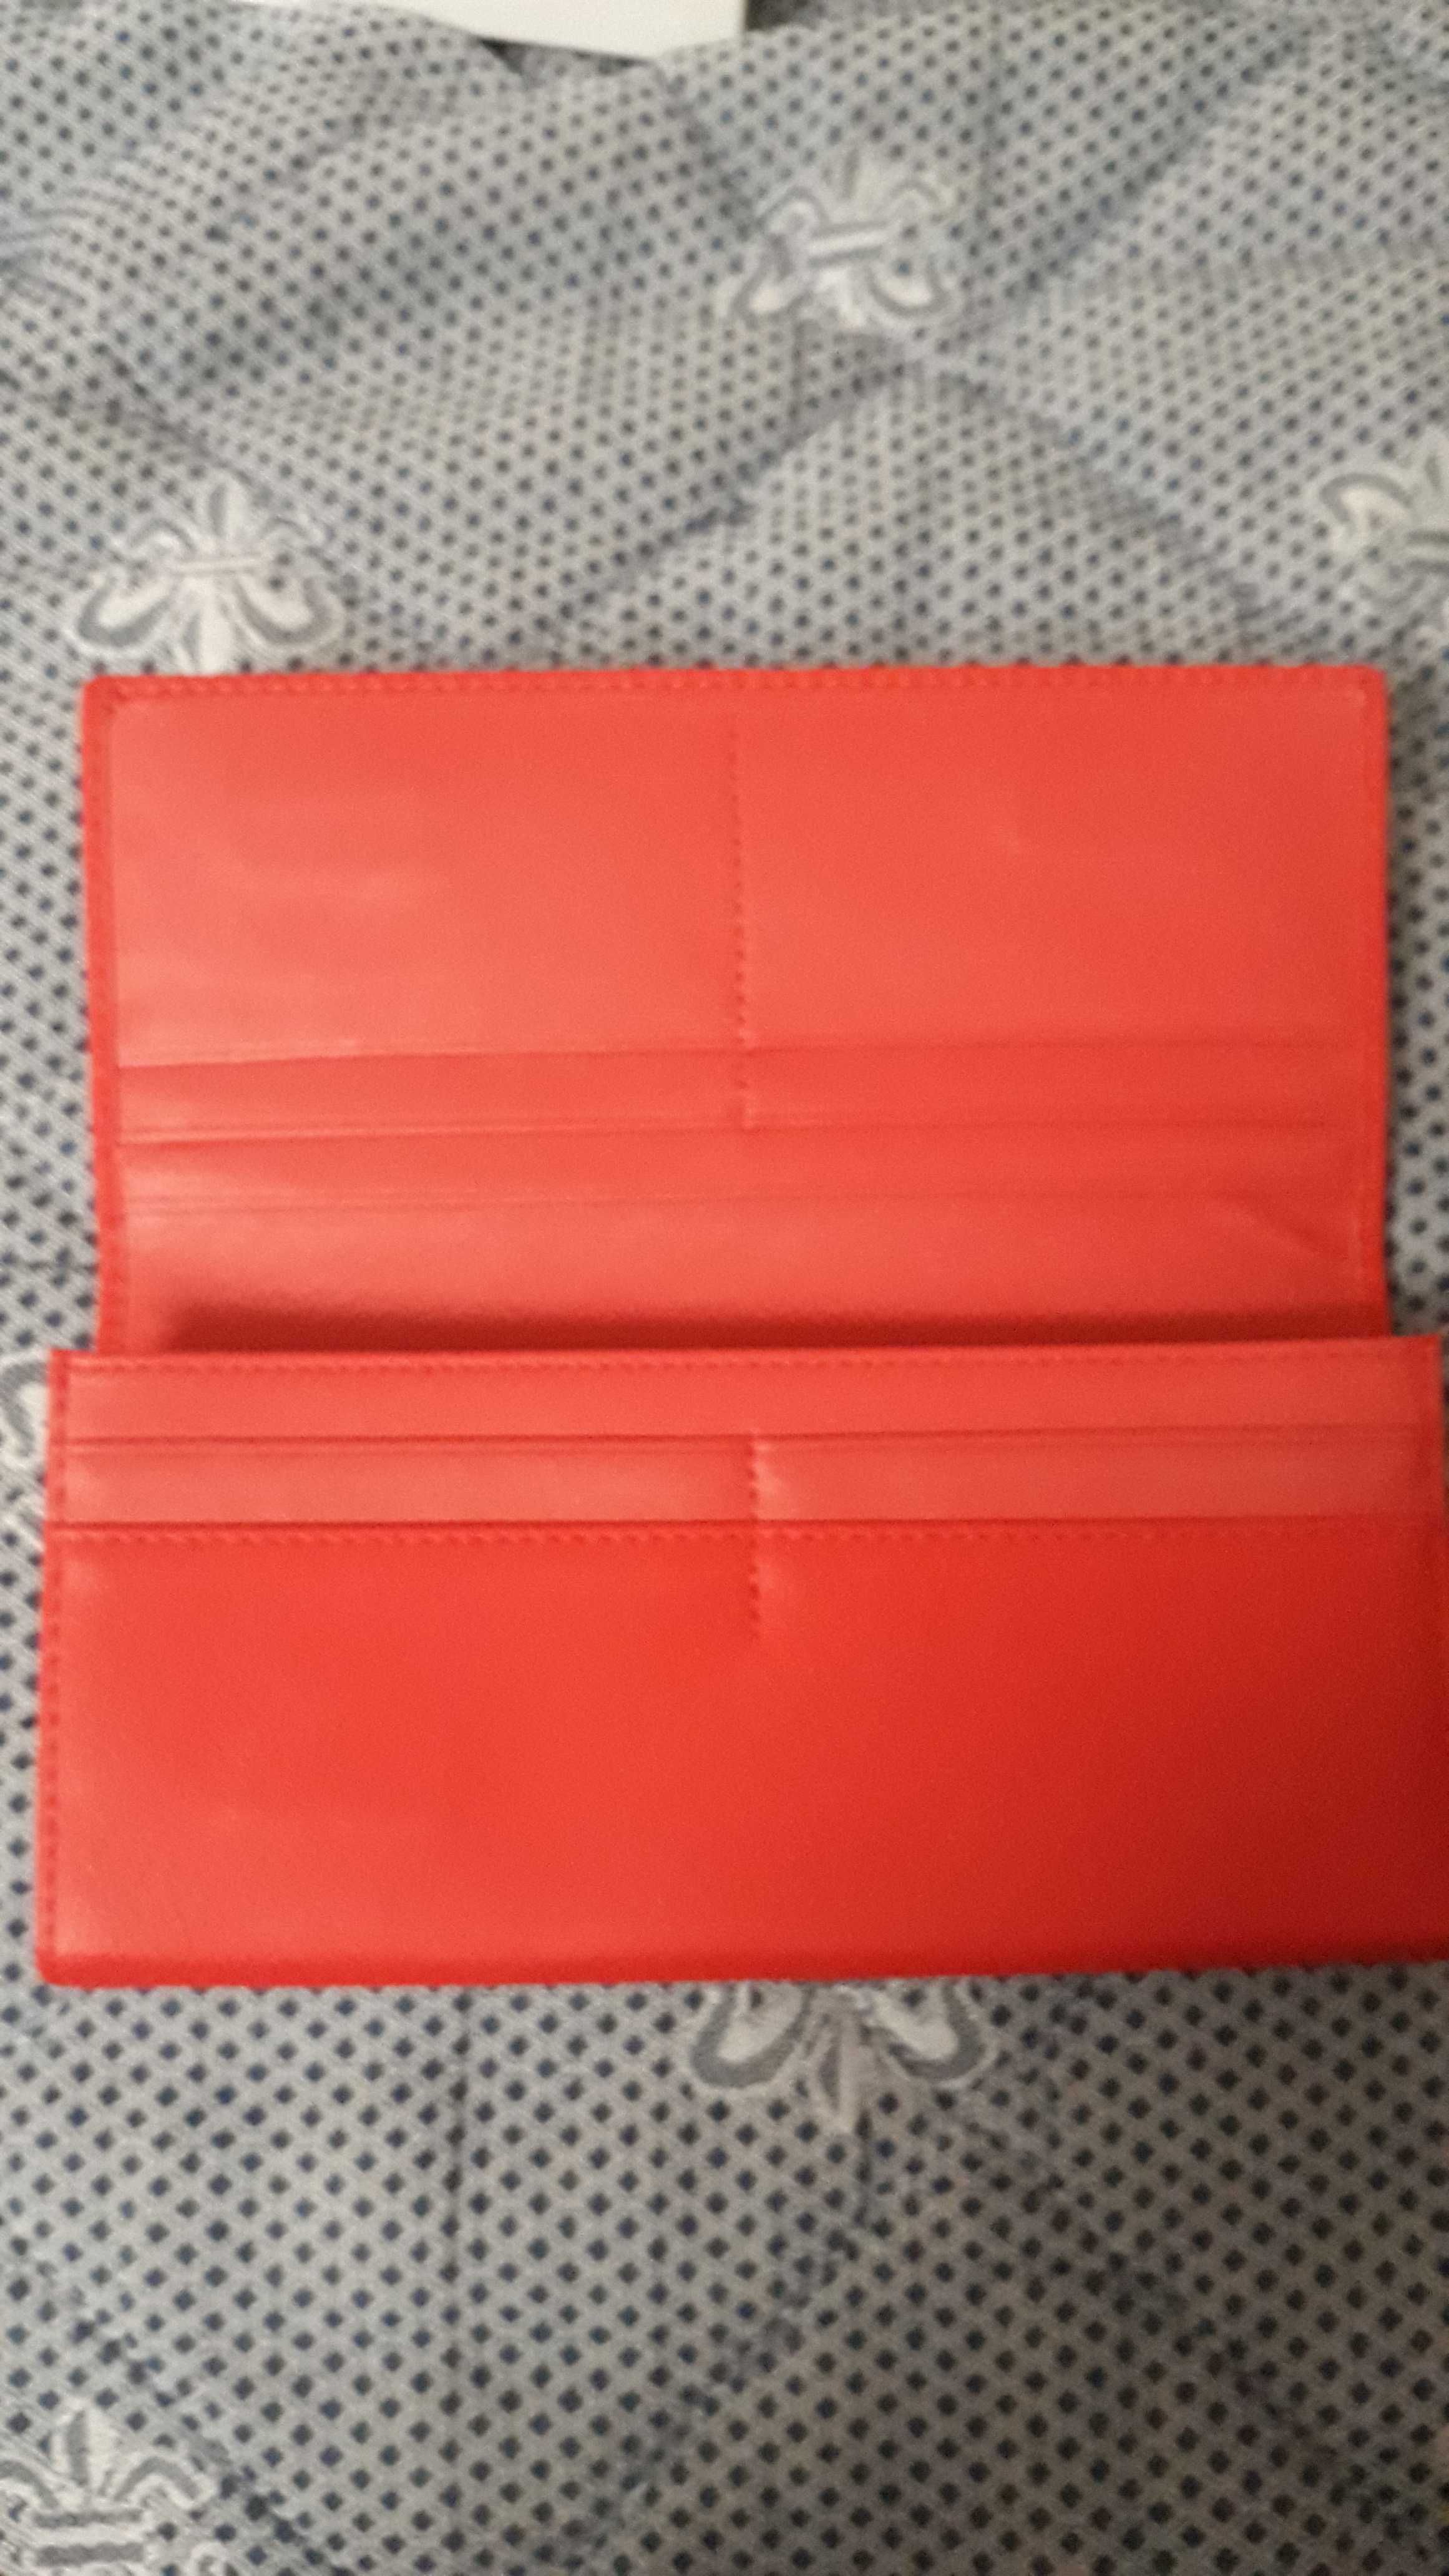 Дамски портфейл в червен цвят.